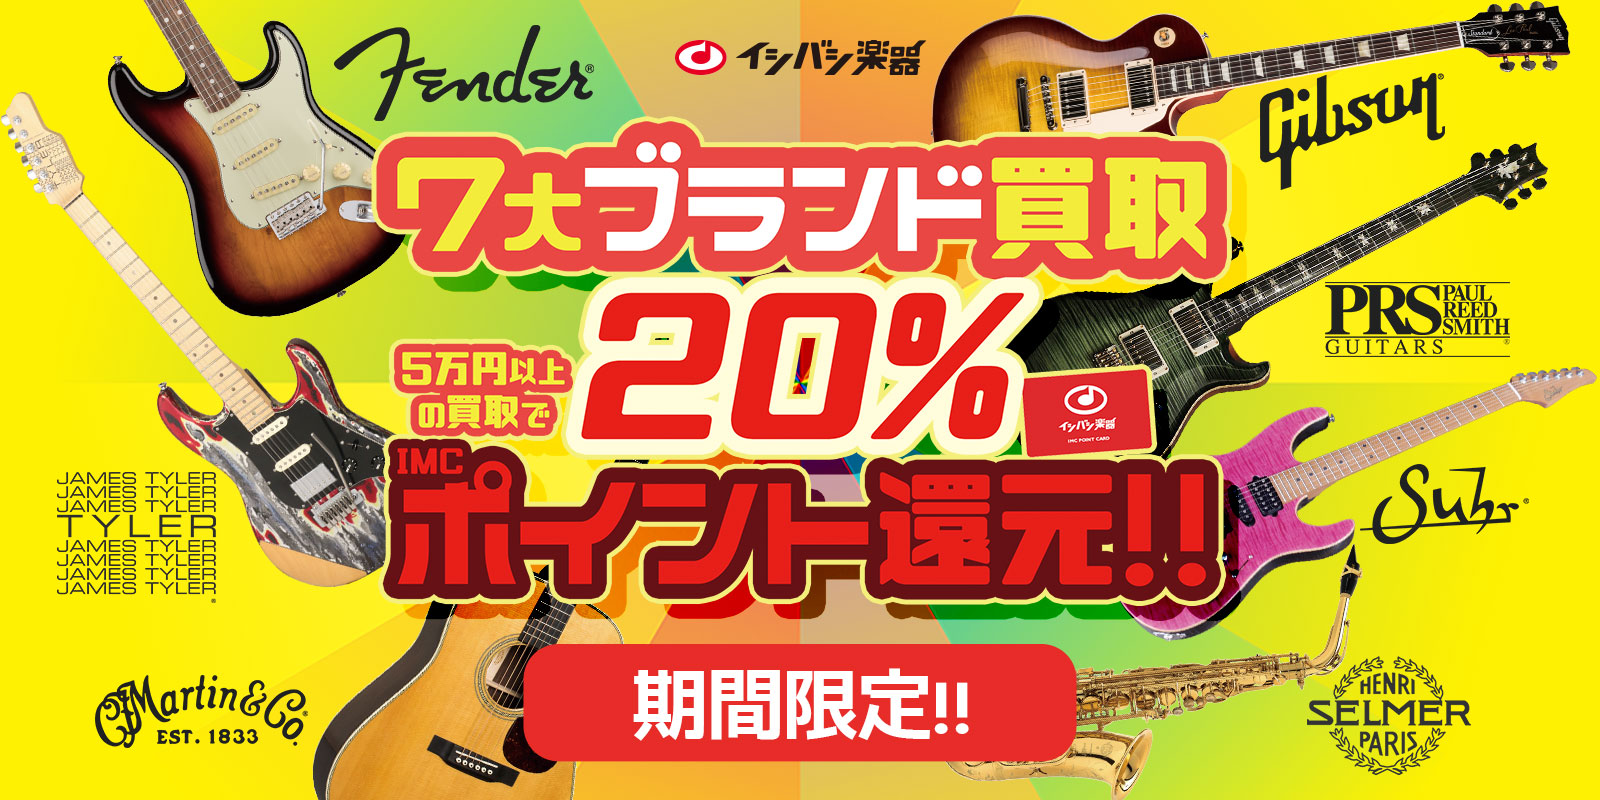 7大ブランド買取20%ポイント還元!!